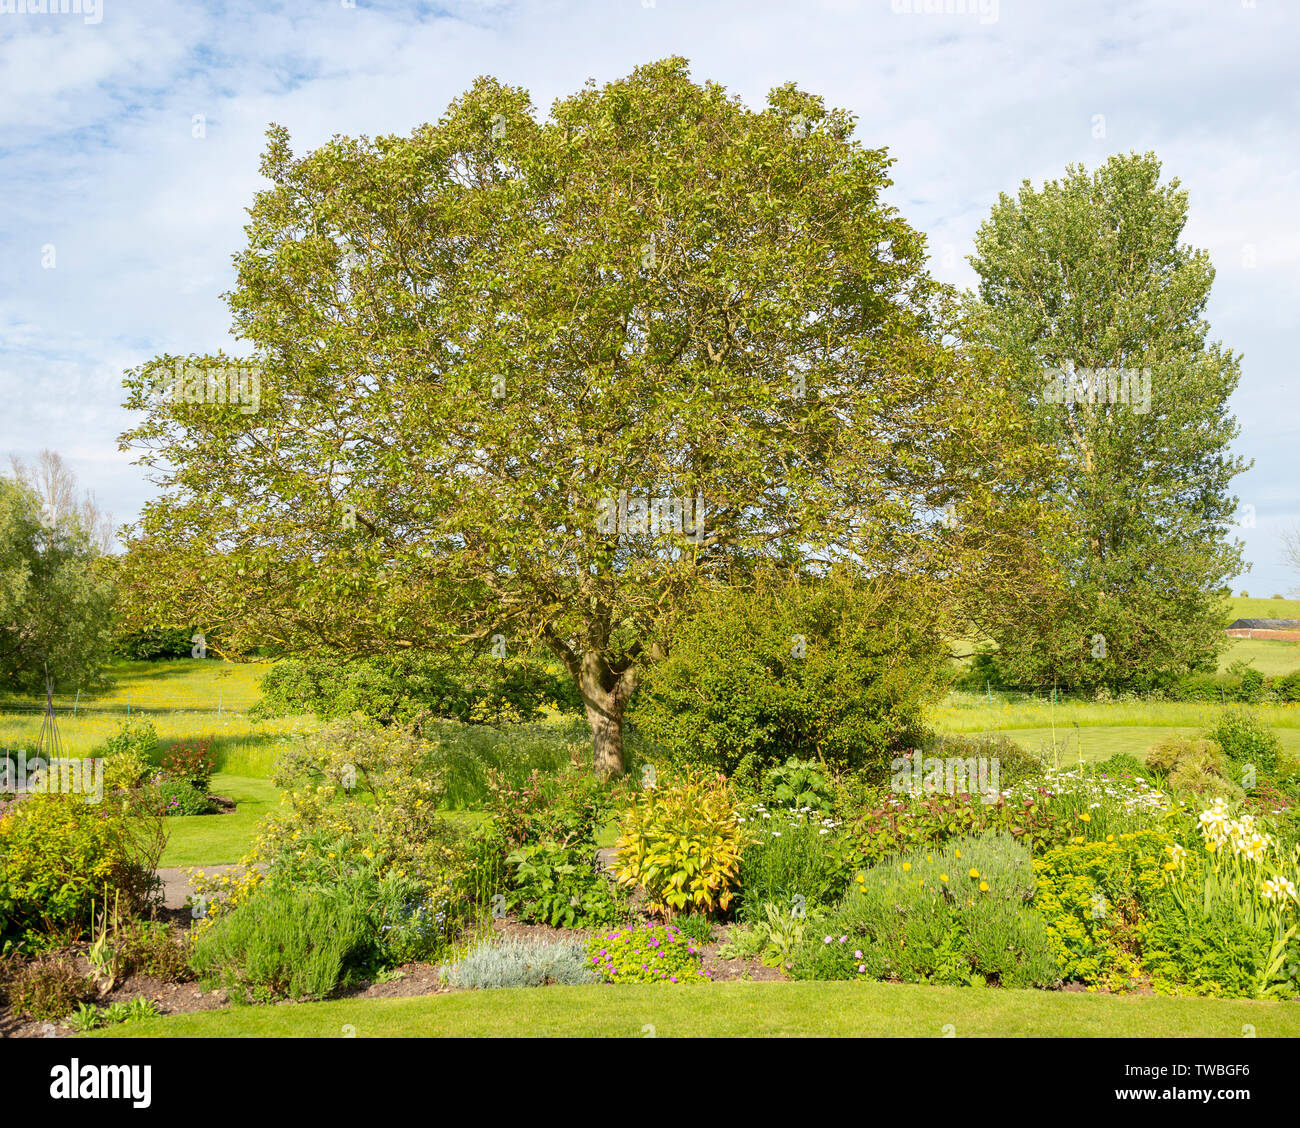 Noyer, Juglans regia, goring dans un jardin anglais, Wiltshire, England, UK Banque D'Images